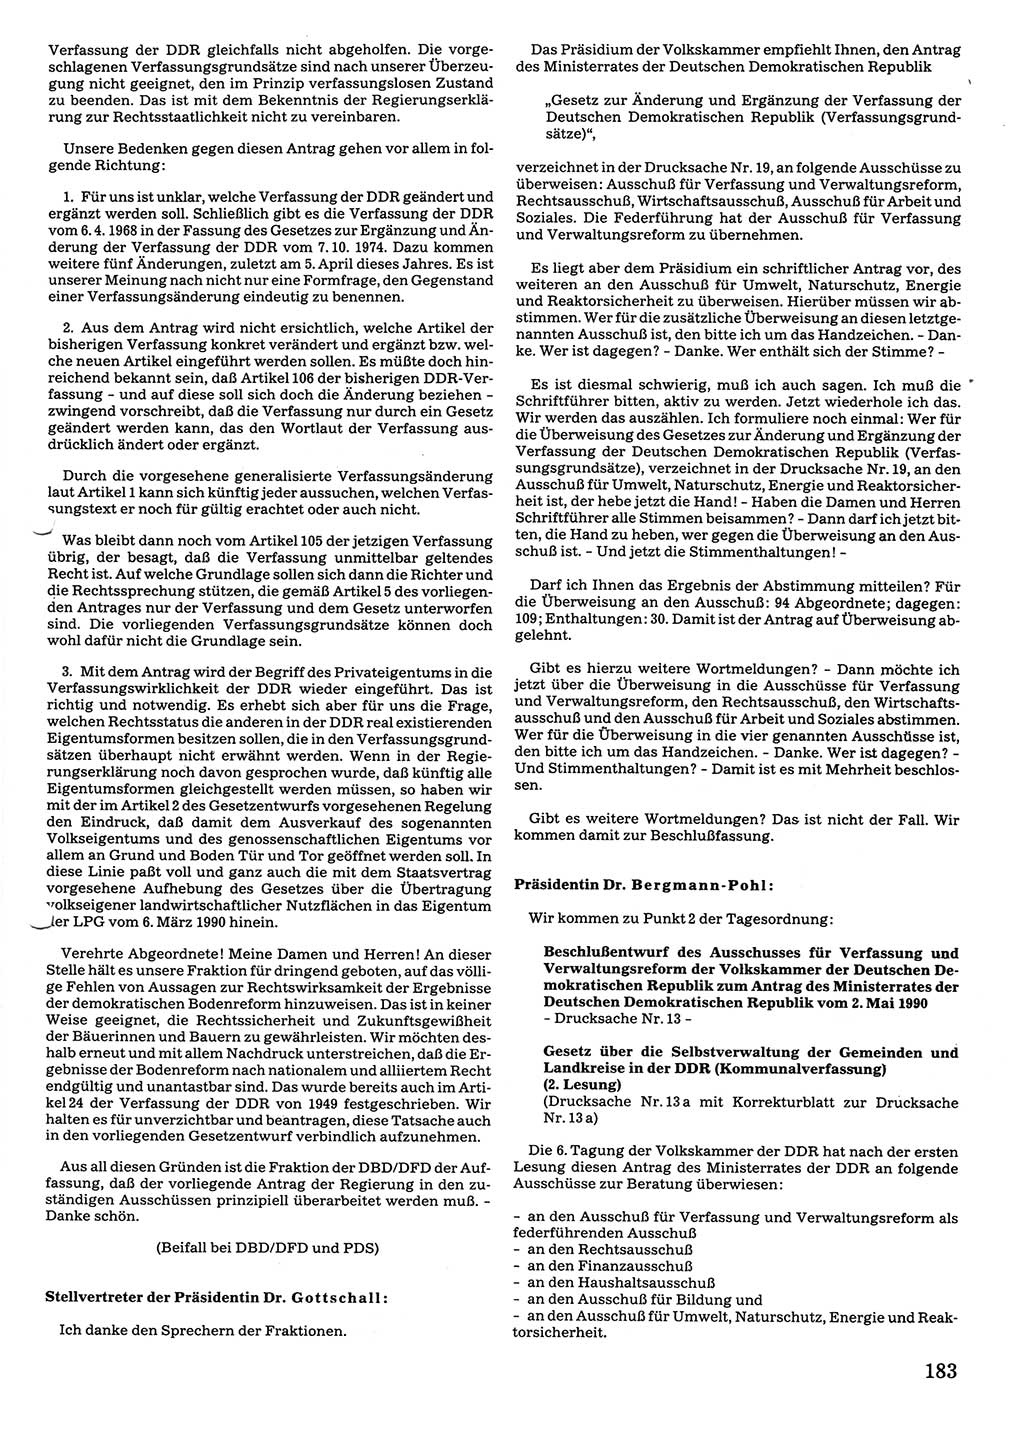 Tagungen der Volkskammer (VK) der Deutschen Demokratischen Republik (DDR), 10. Wahlperiode 1990, Seite 183 (VK. DDR 10. WP. 1990, Prot. Tg. 1-38, 5.4.-2.10.1990, S. 183)